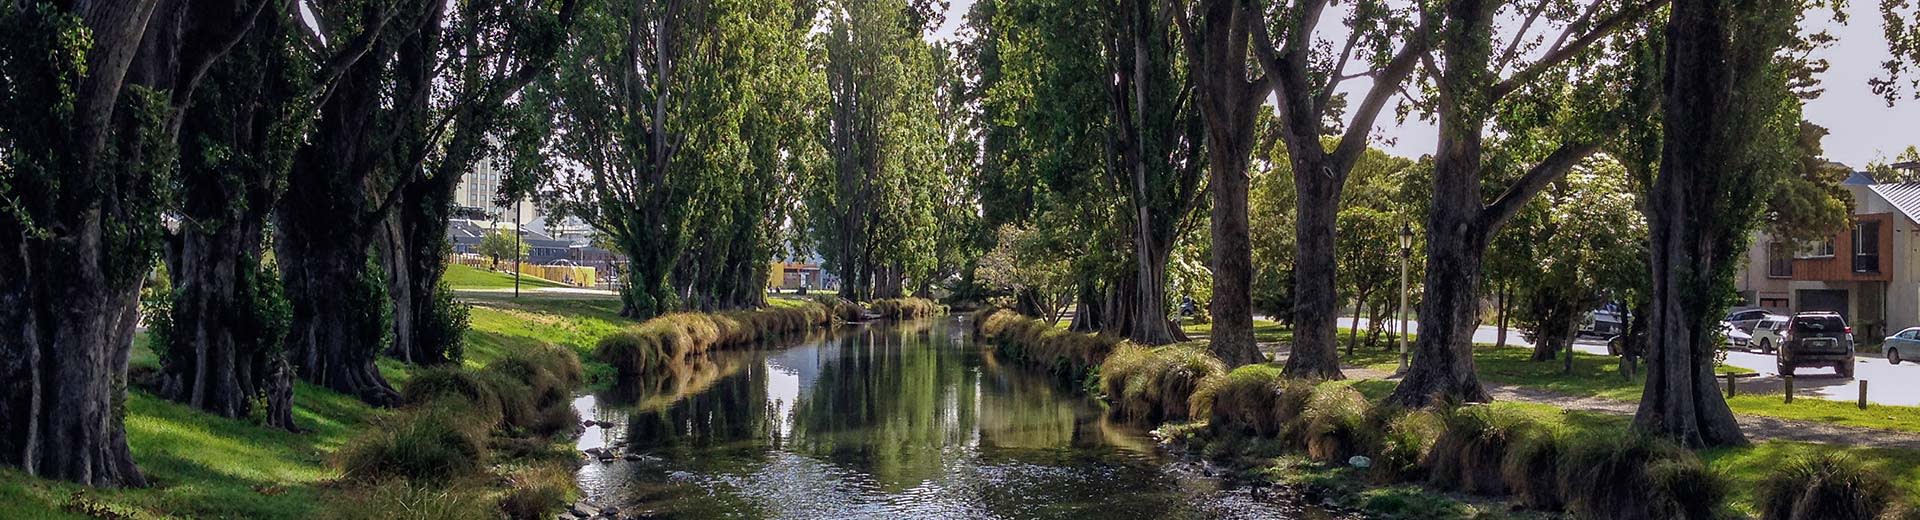 Un canal idyllique entouré d'arbres à Christchurch.